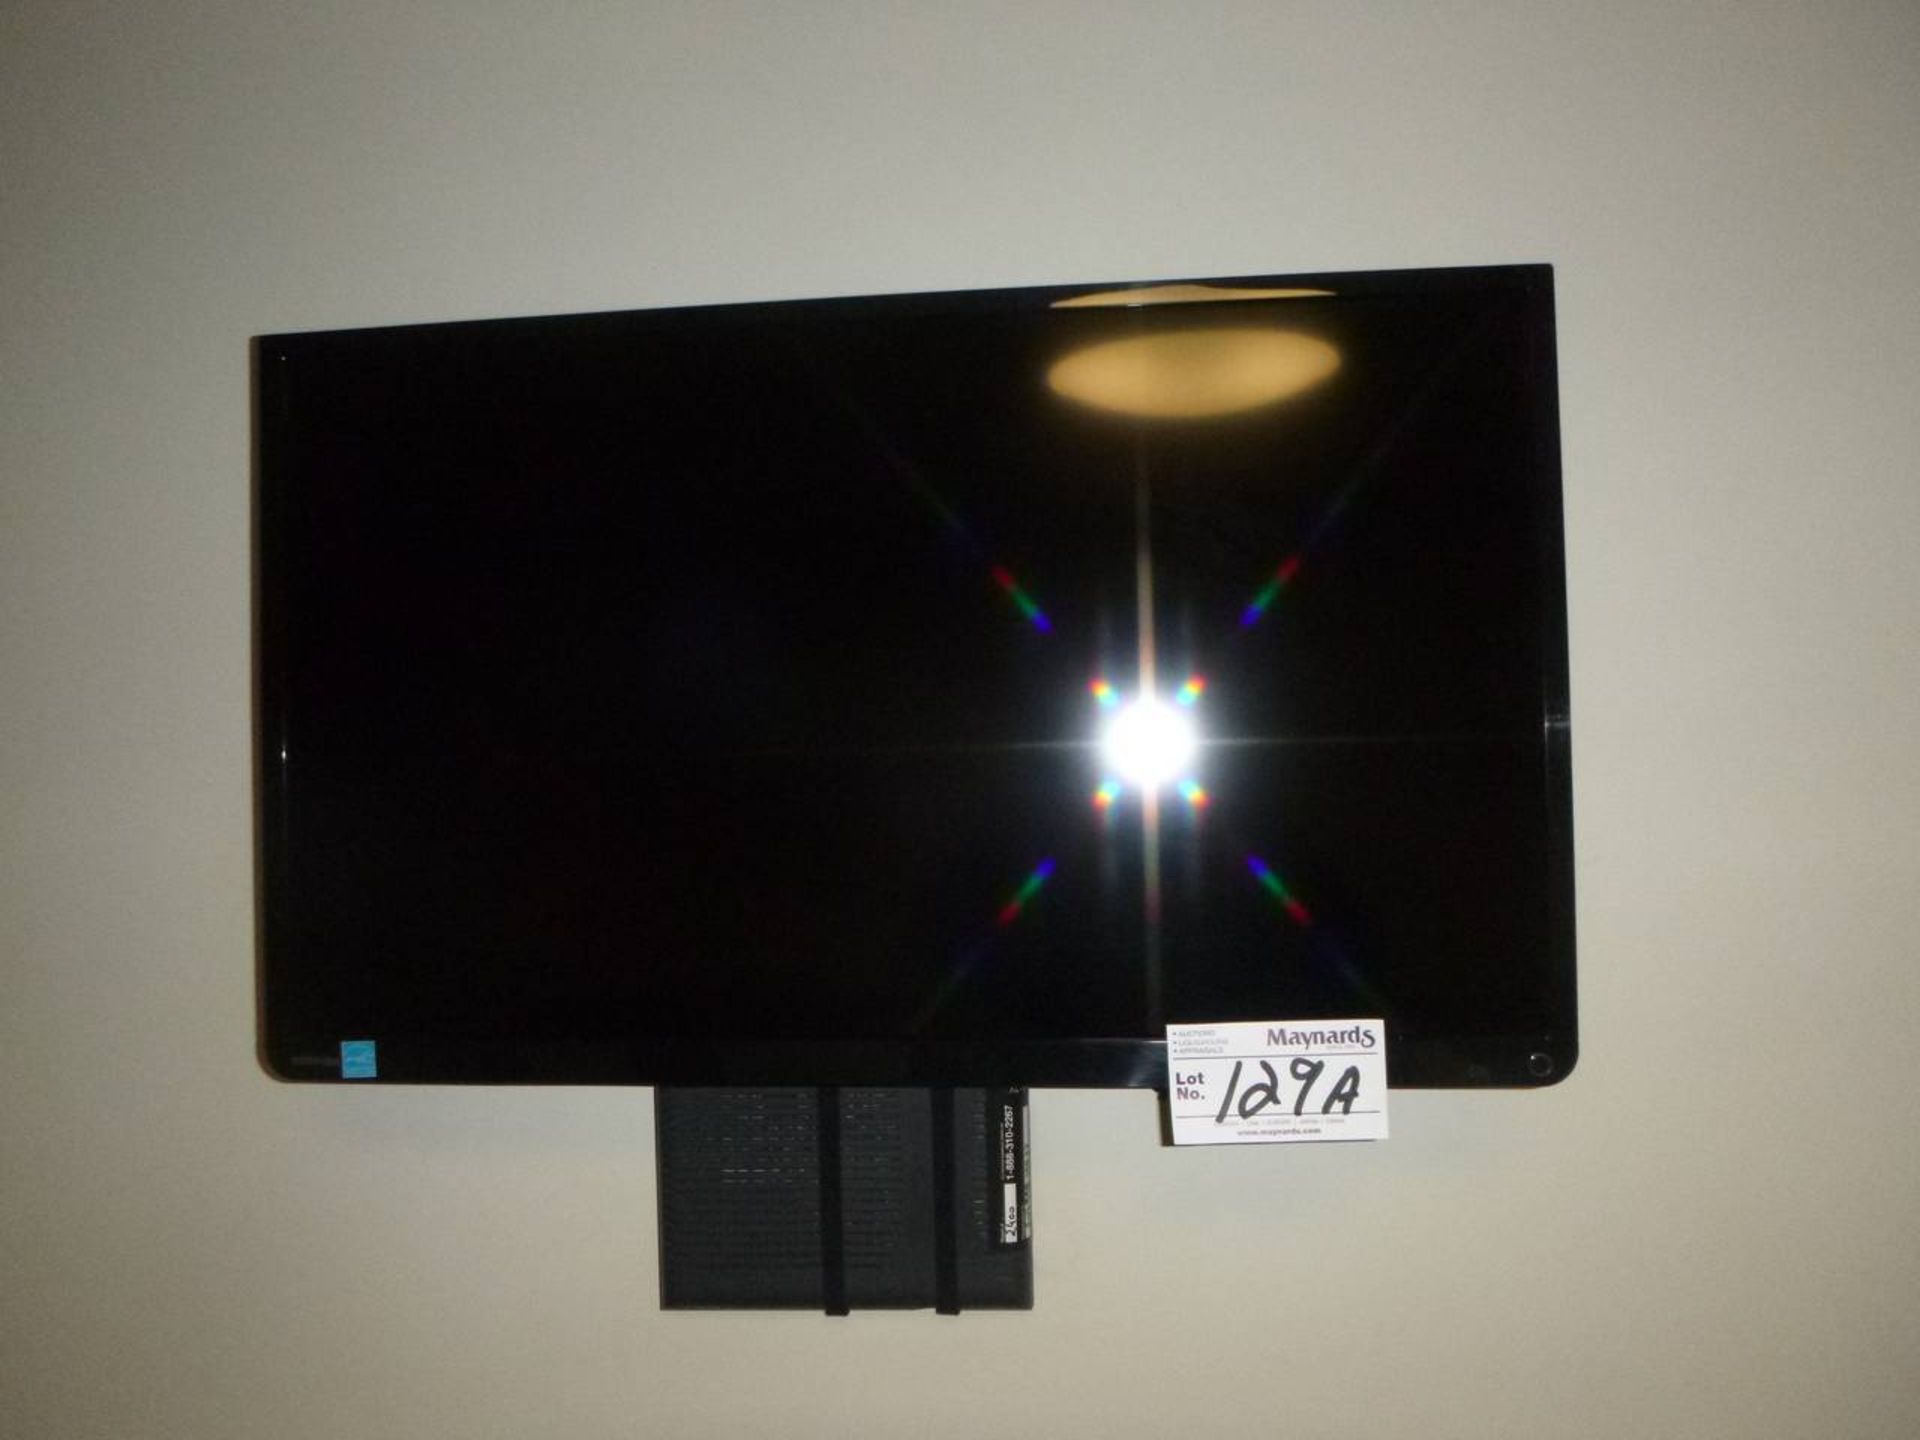 Toshiba 32L1350UD Flat screen TV